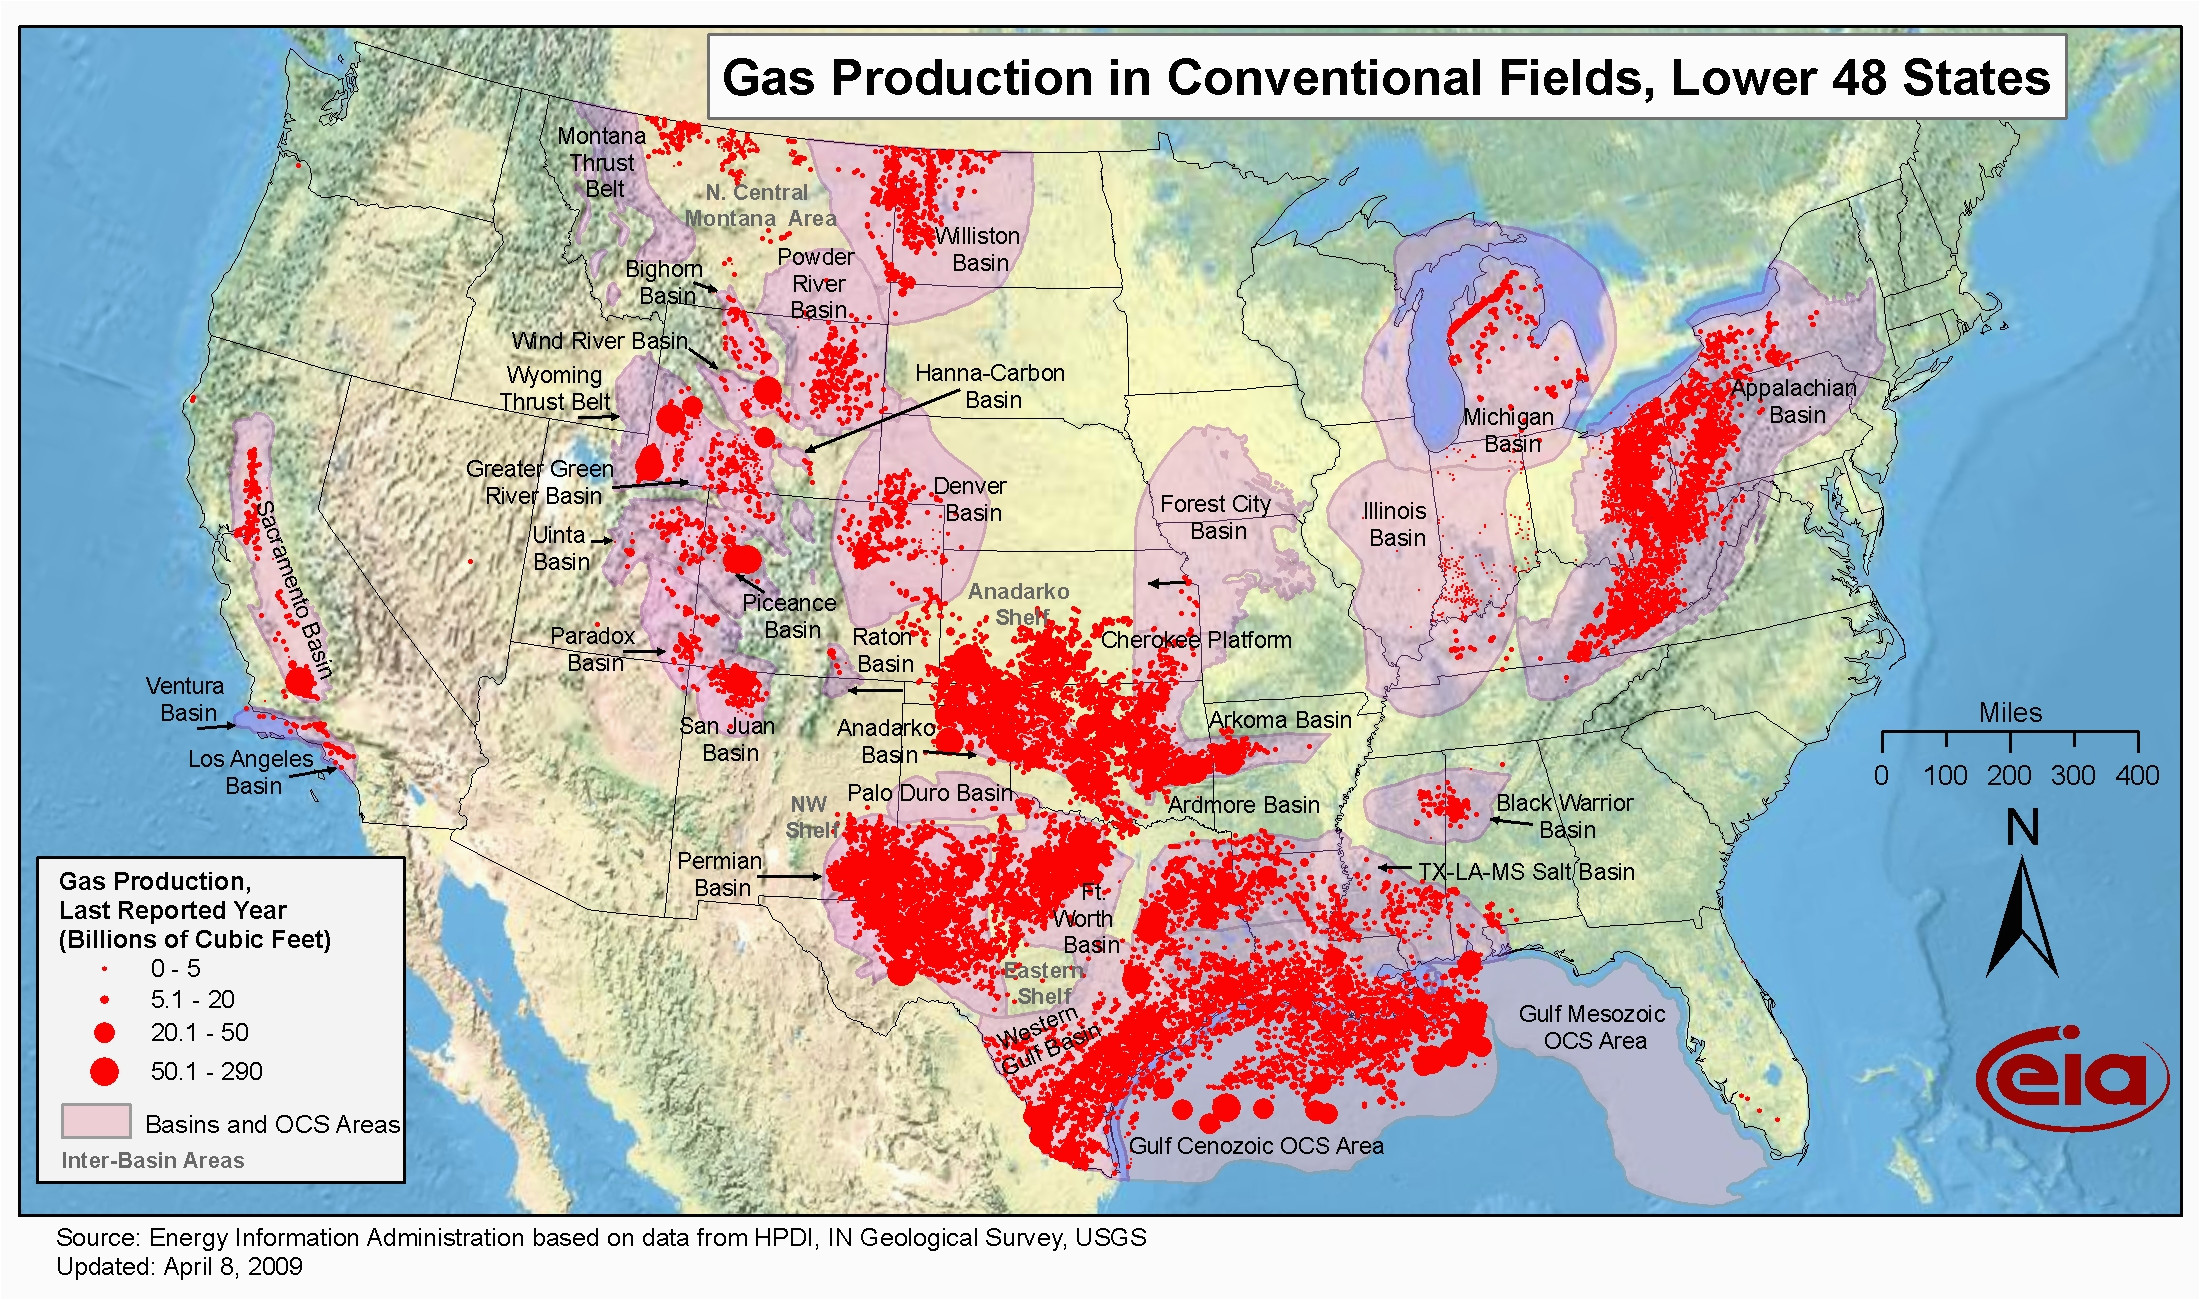 Colorado Oil Fields Map Oil Fields In Texas Map Business Ideas 2013 Of Colorado Oil Fields Map 